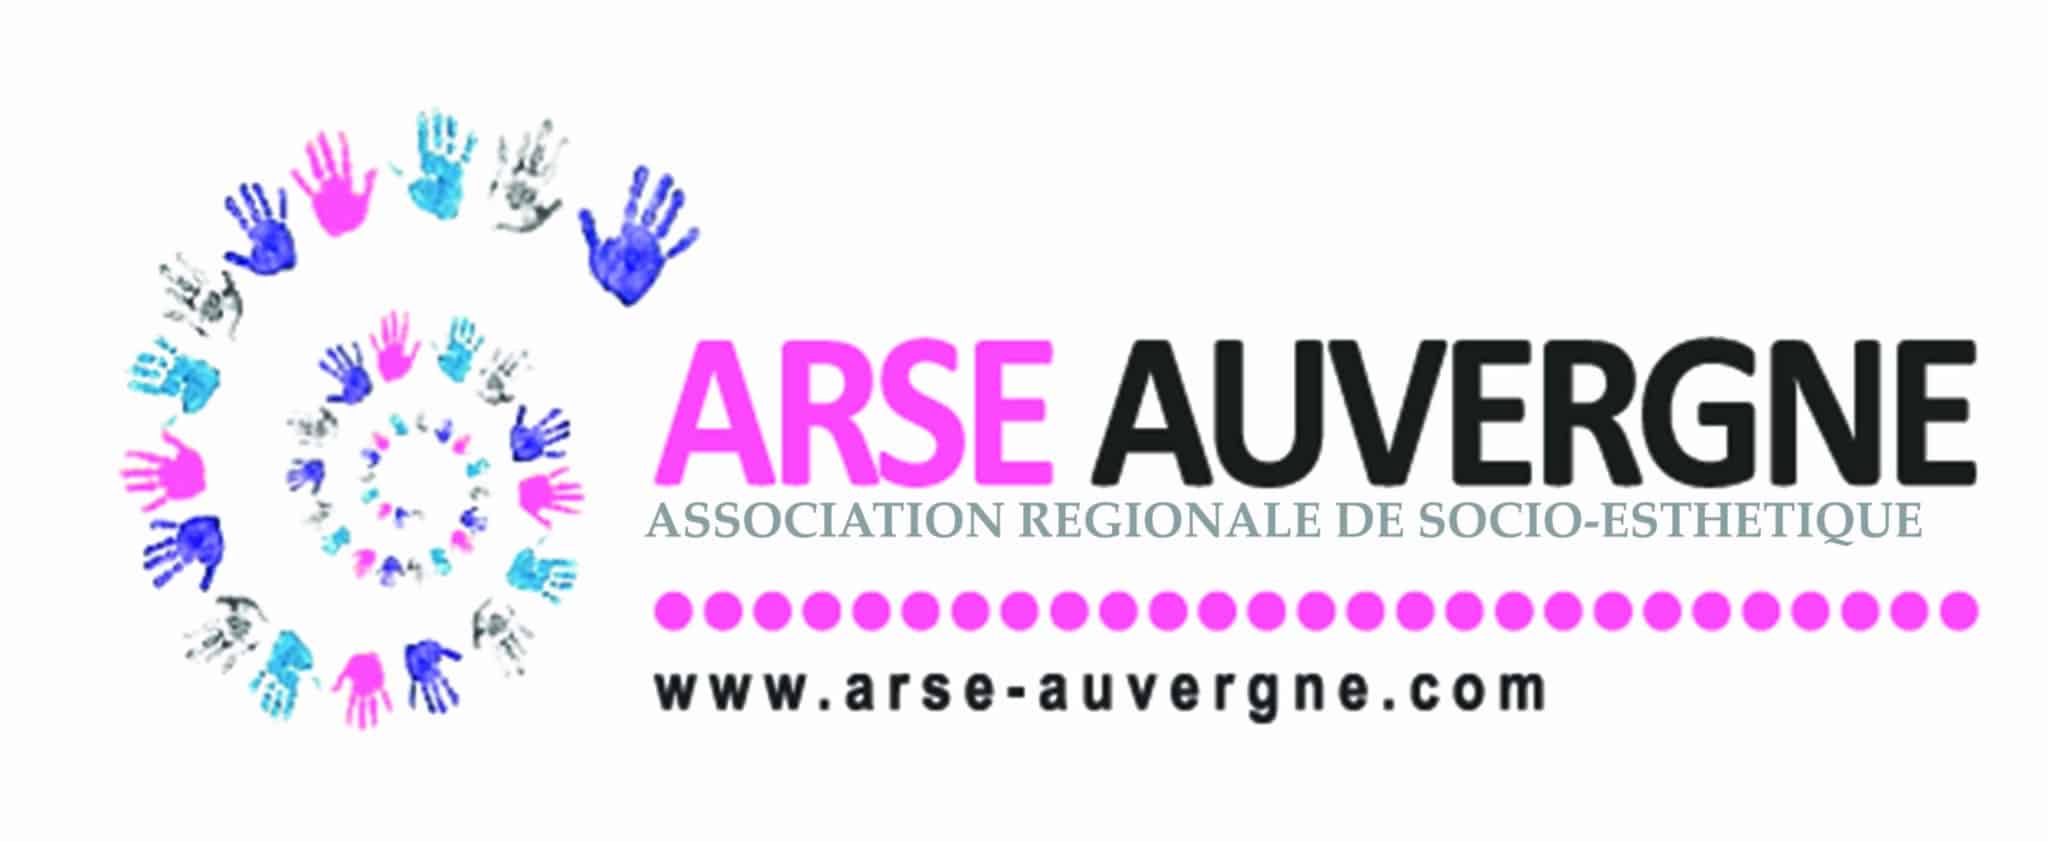 Association régionale de socio-esthétique (ARSE)